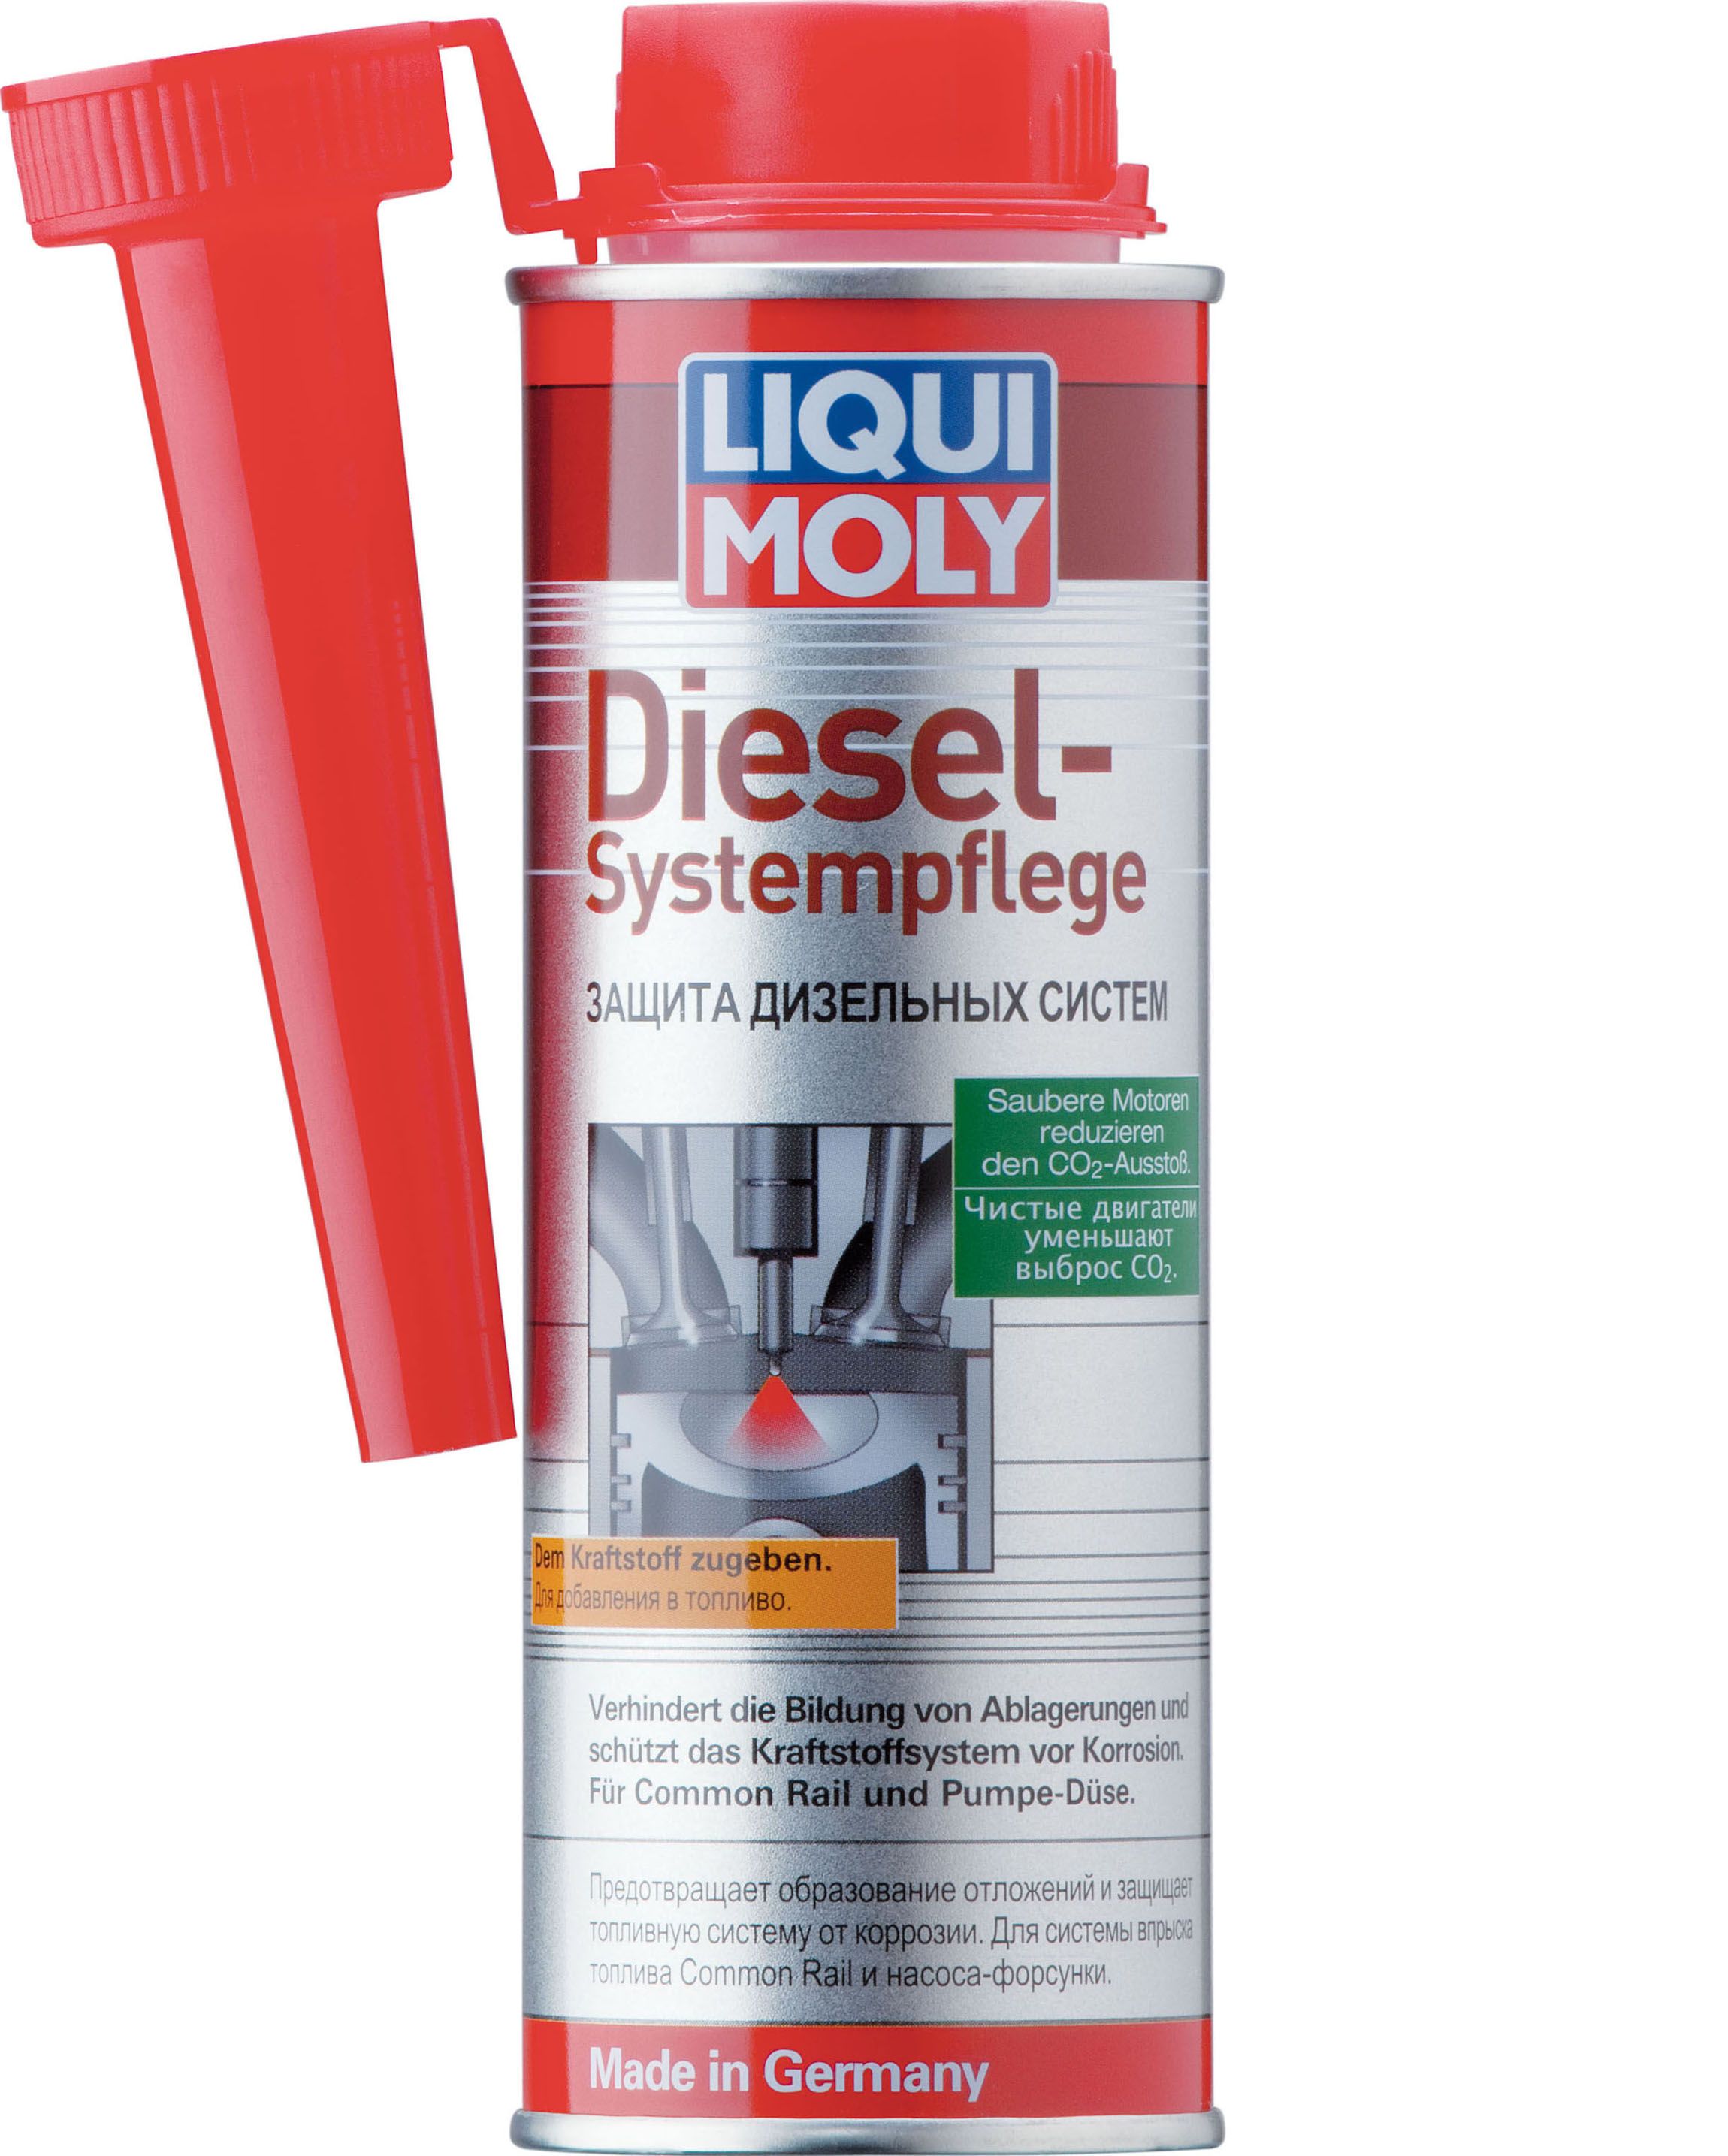 Защита дизельных систем Diesel Systempflege, 250мл - Liqui Moly 7506